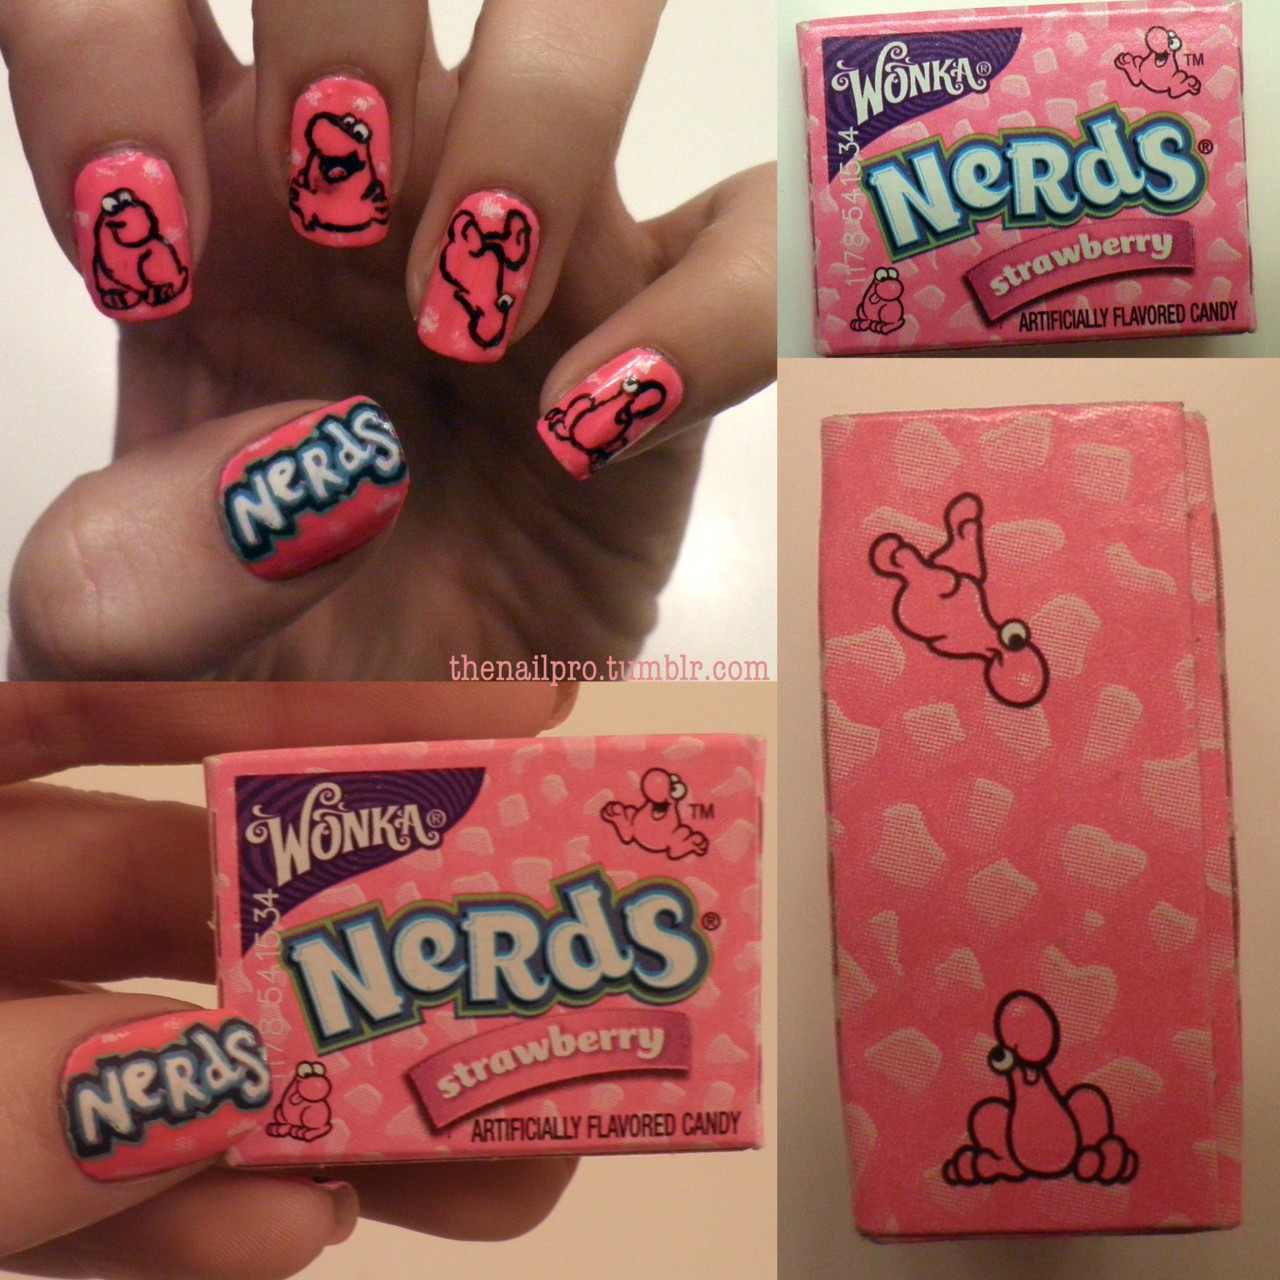 nerds - Nails, Nail Art Photo (35017154) - Fanpop